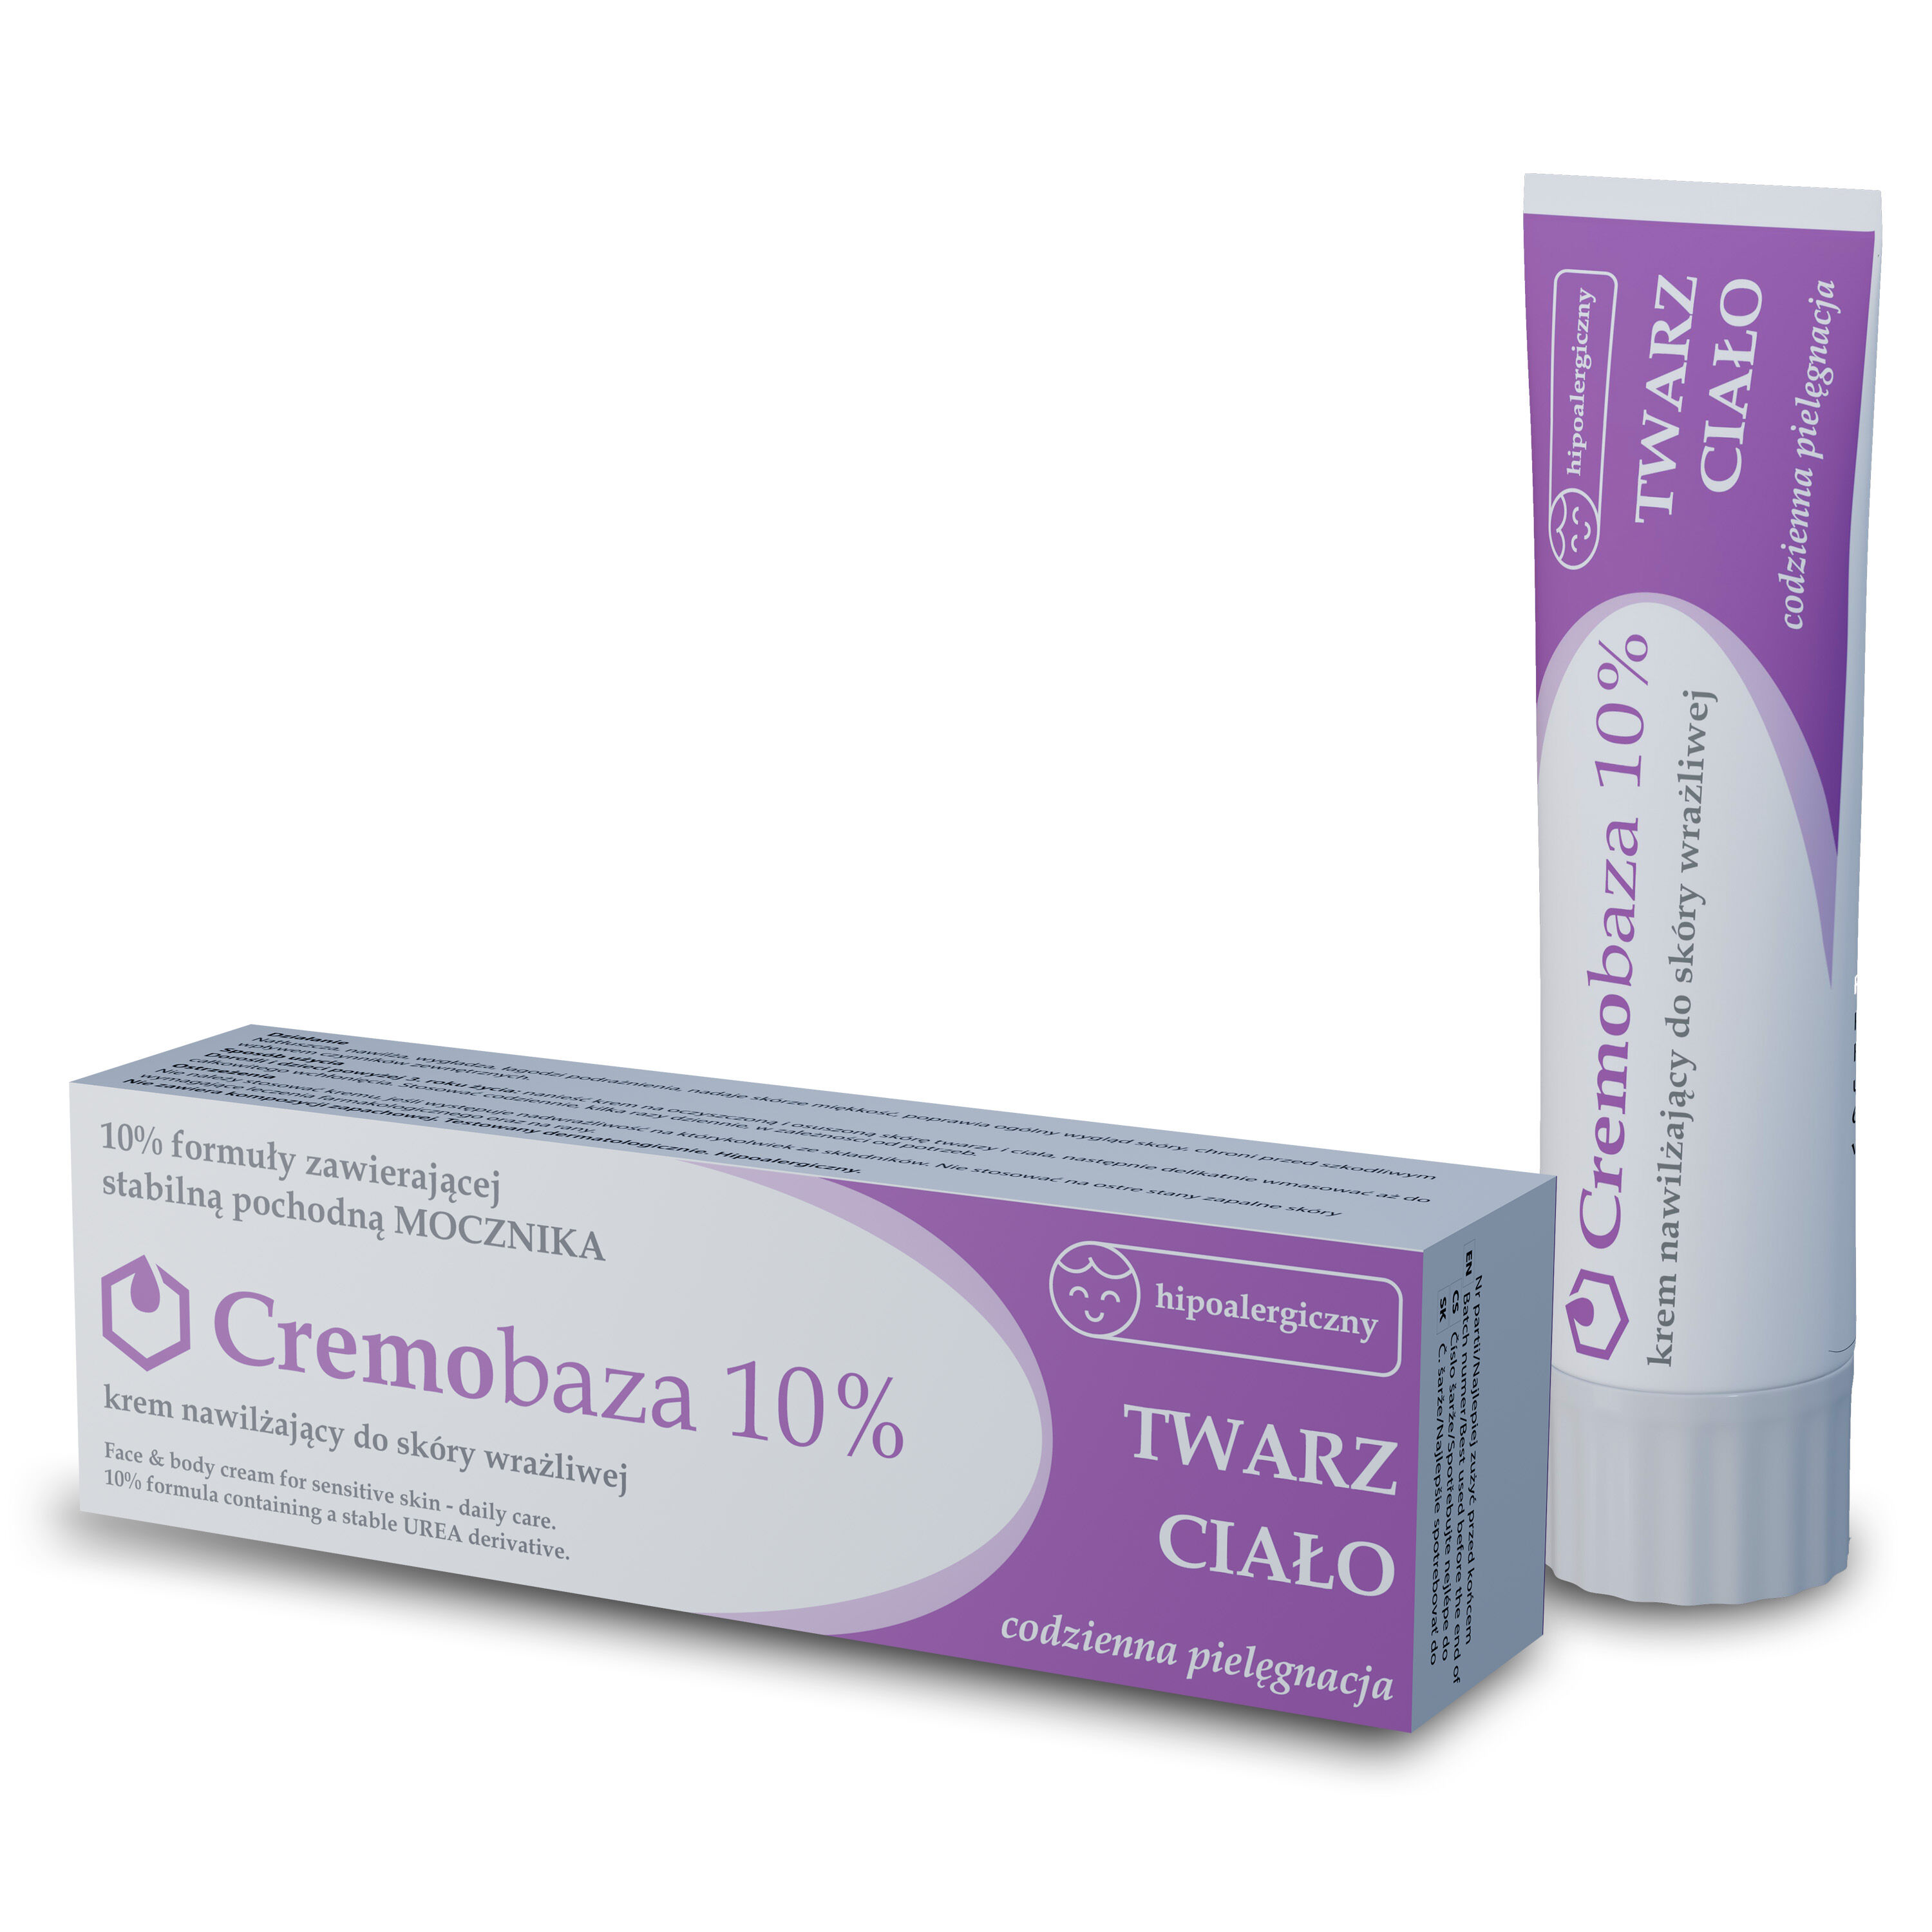 Крем с 10% мочевиной Cremobaza, 30 гр крем cortizone 10 maximum strength для чувствительной кожи 56 г